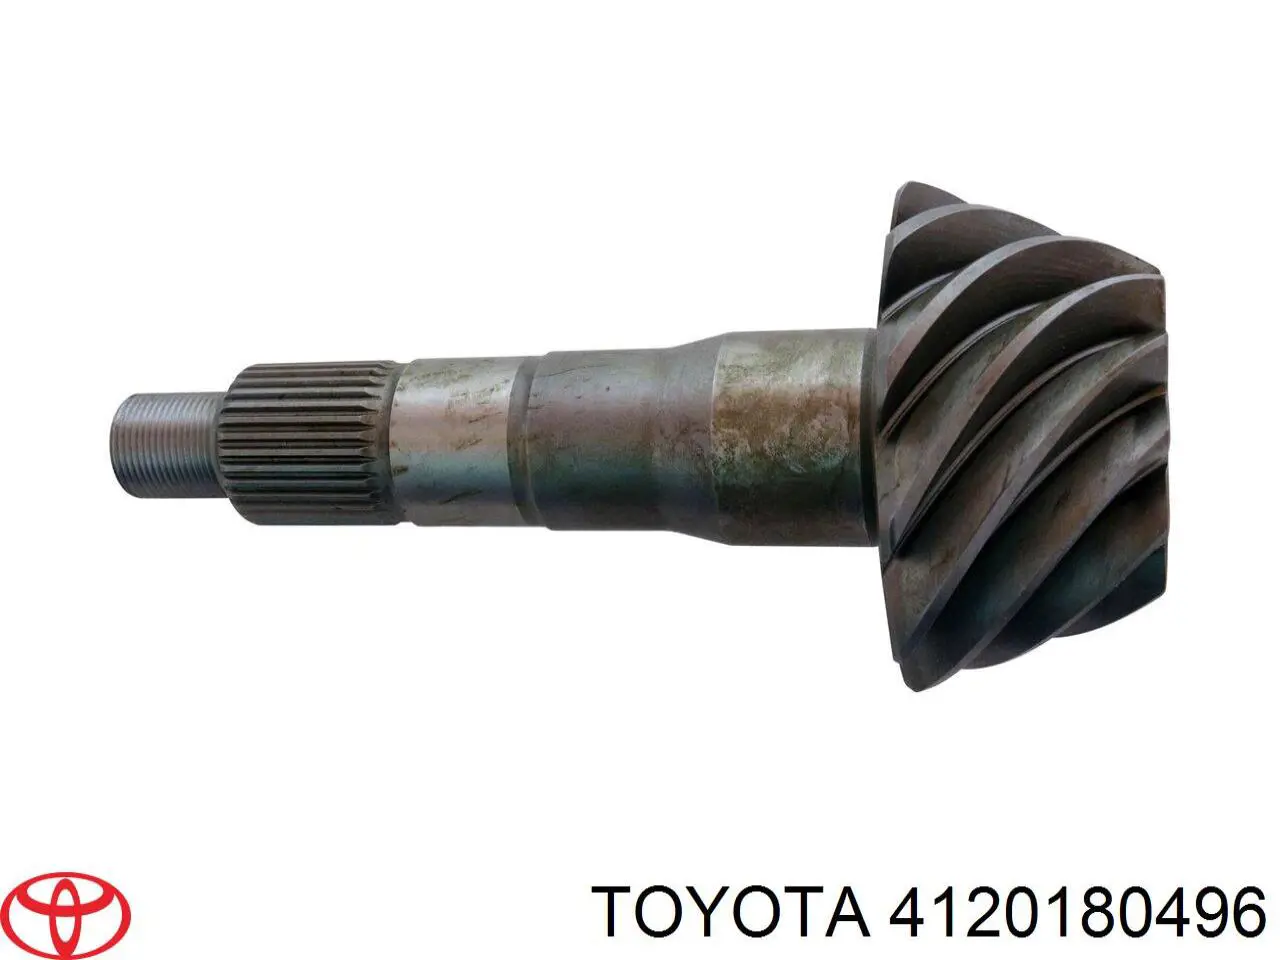 4120180496 Toyota componente par, diferencial para eje trasero